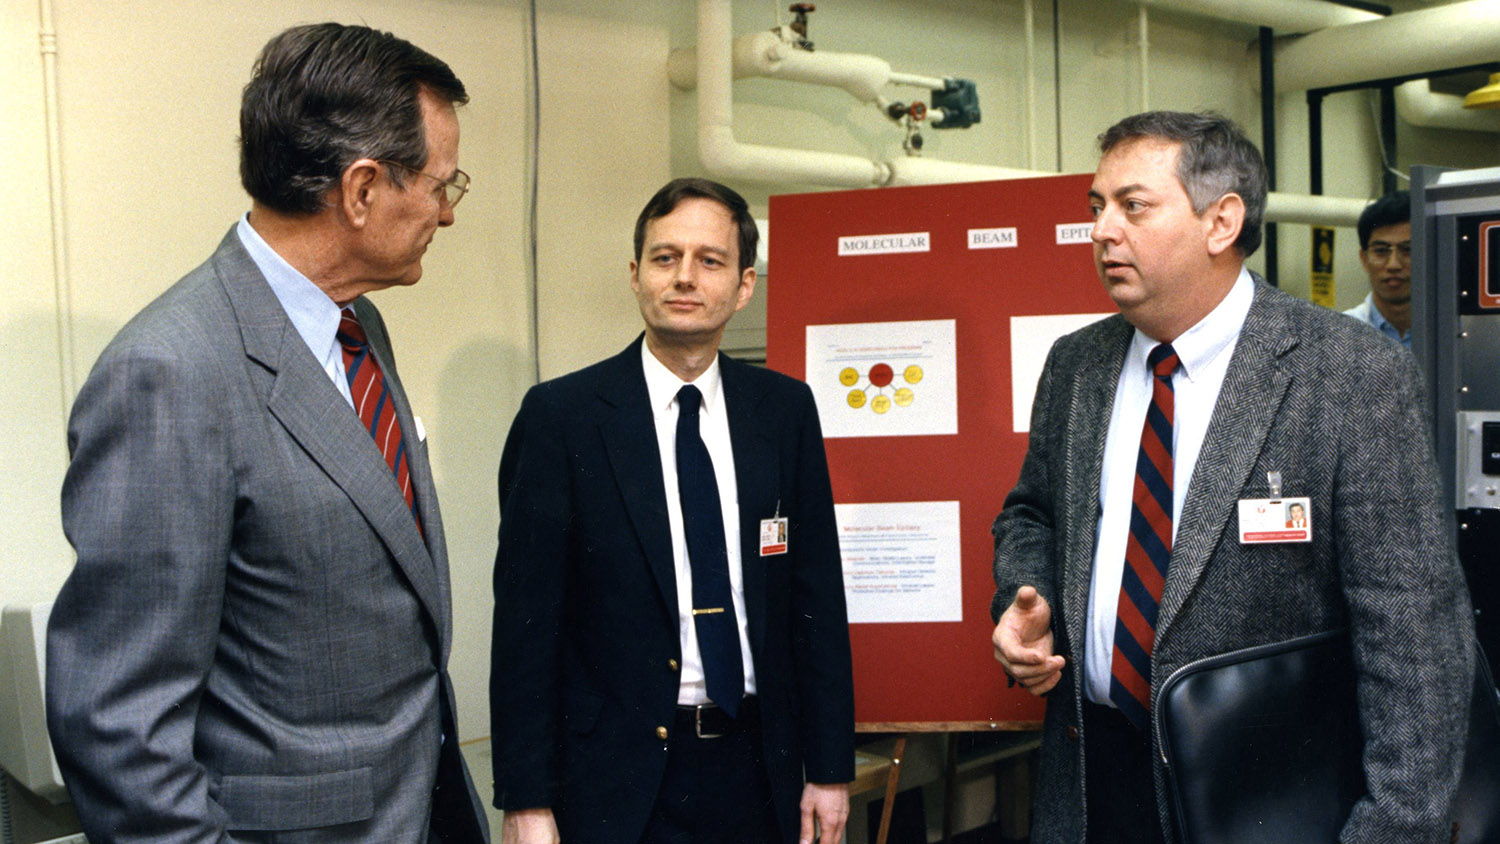 1990年，老布什总统在访问北卡州立大学期间与两名教师交谈